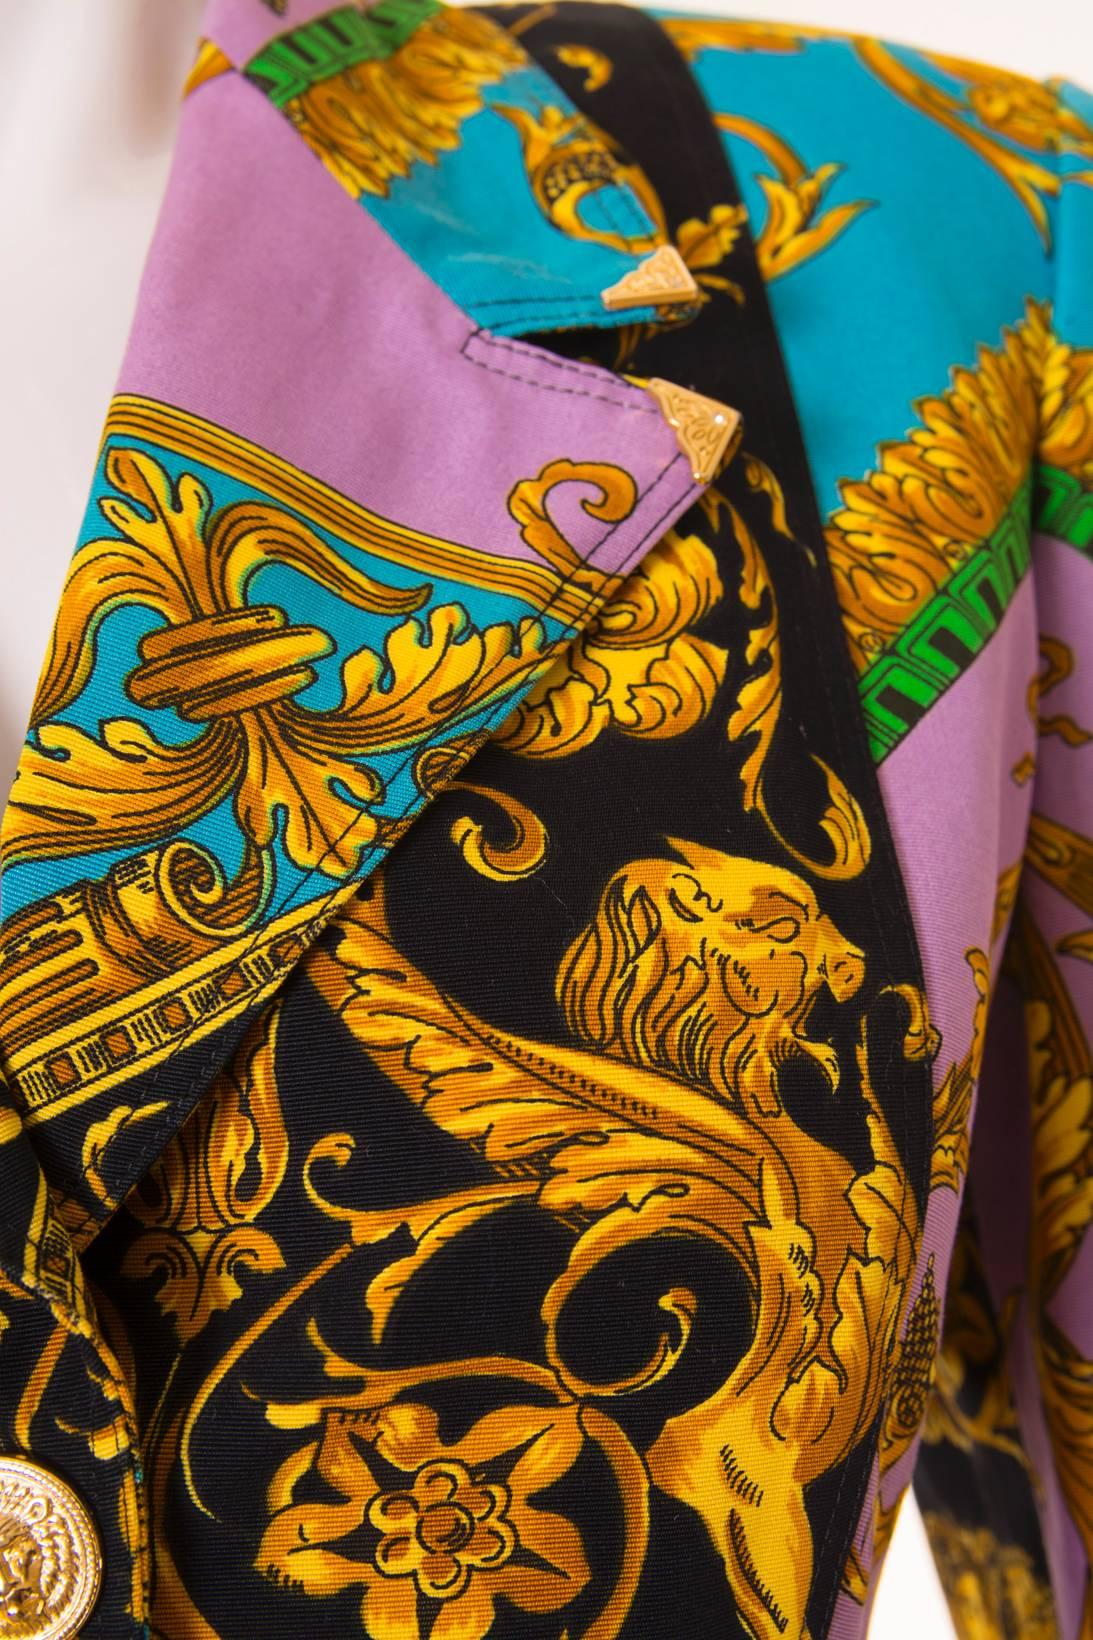 Versus Gianni Versace Baroque Skirt Suit 3